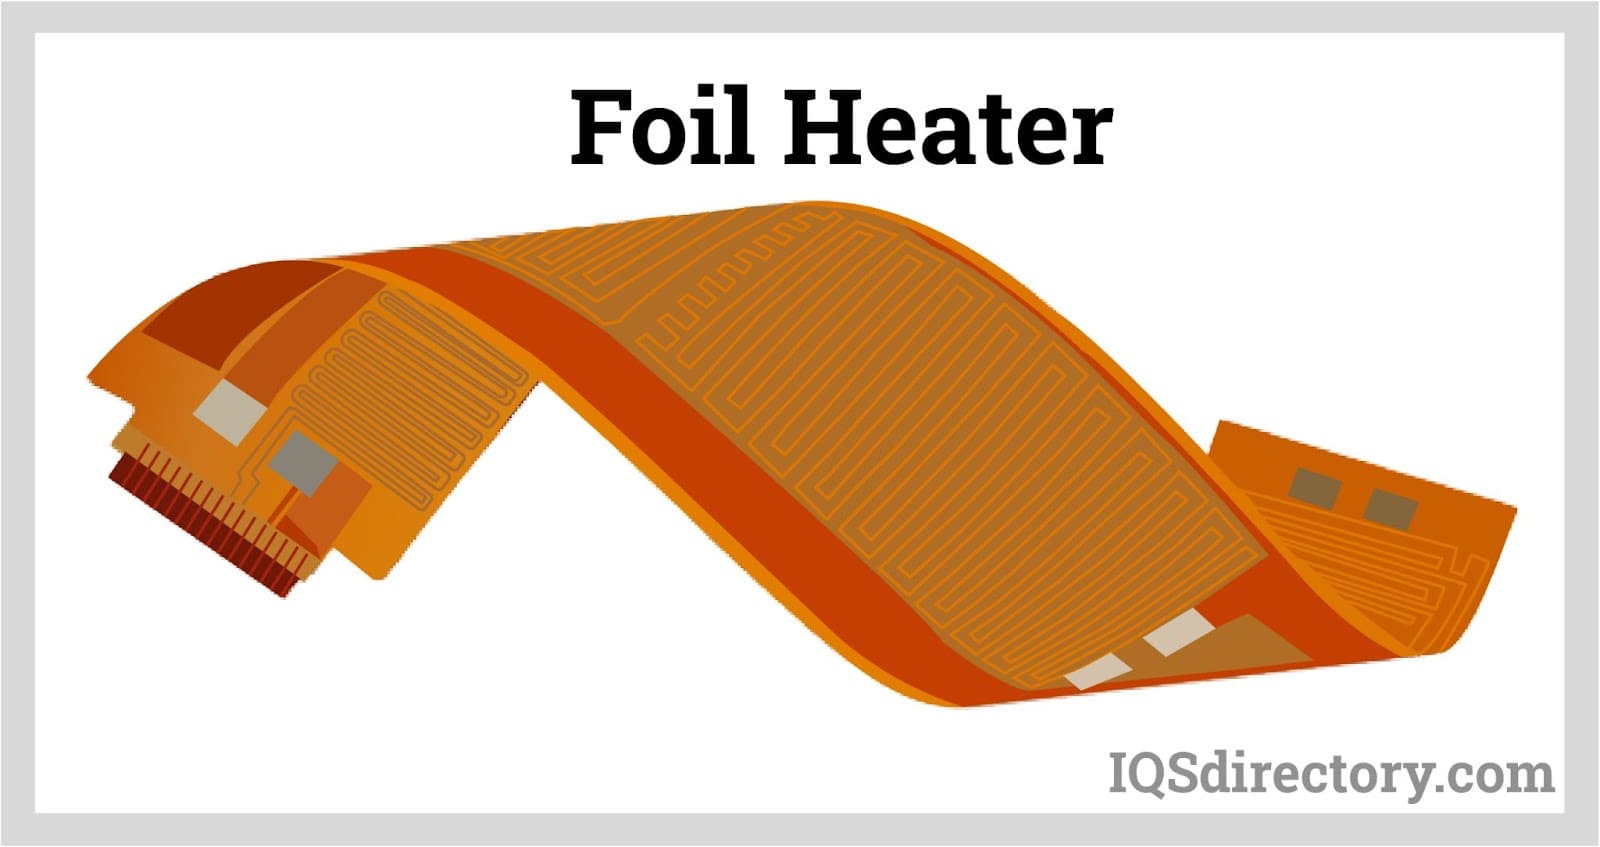 Foil Heater